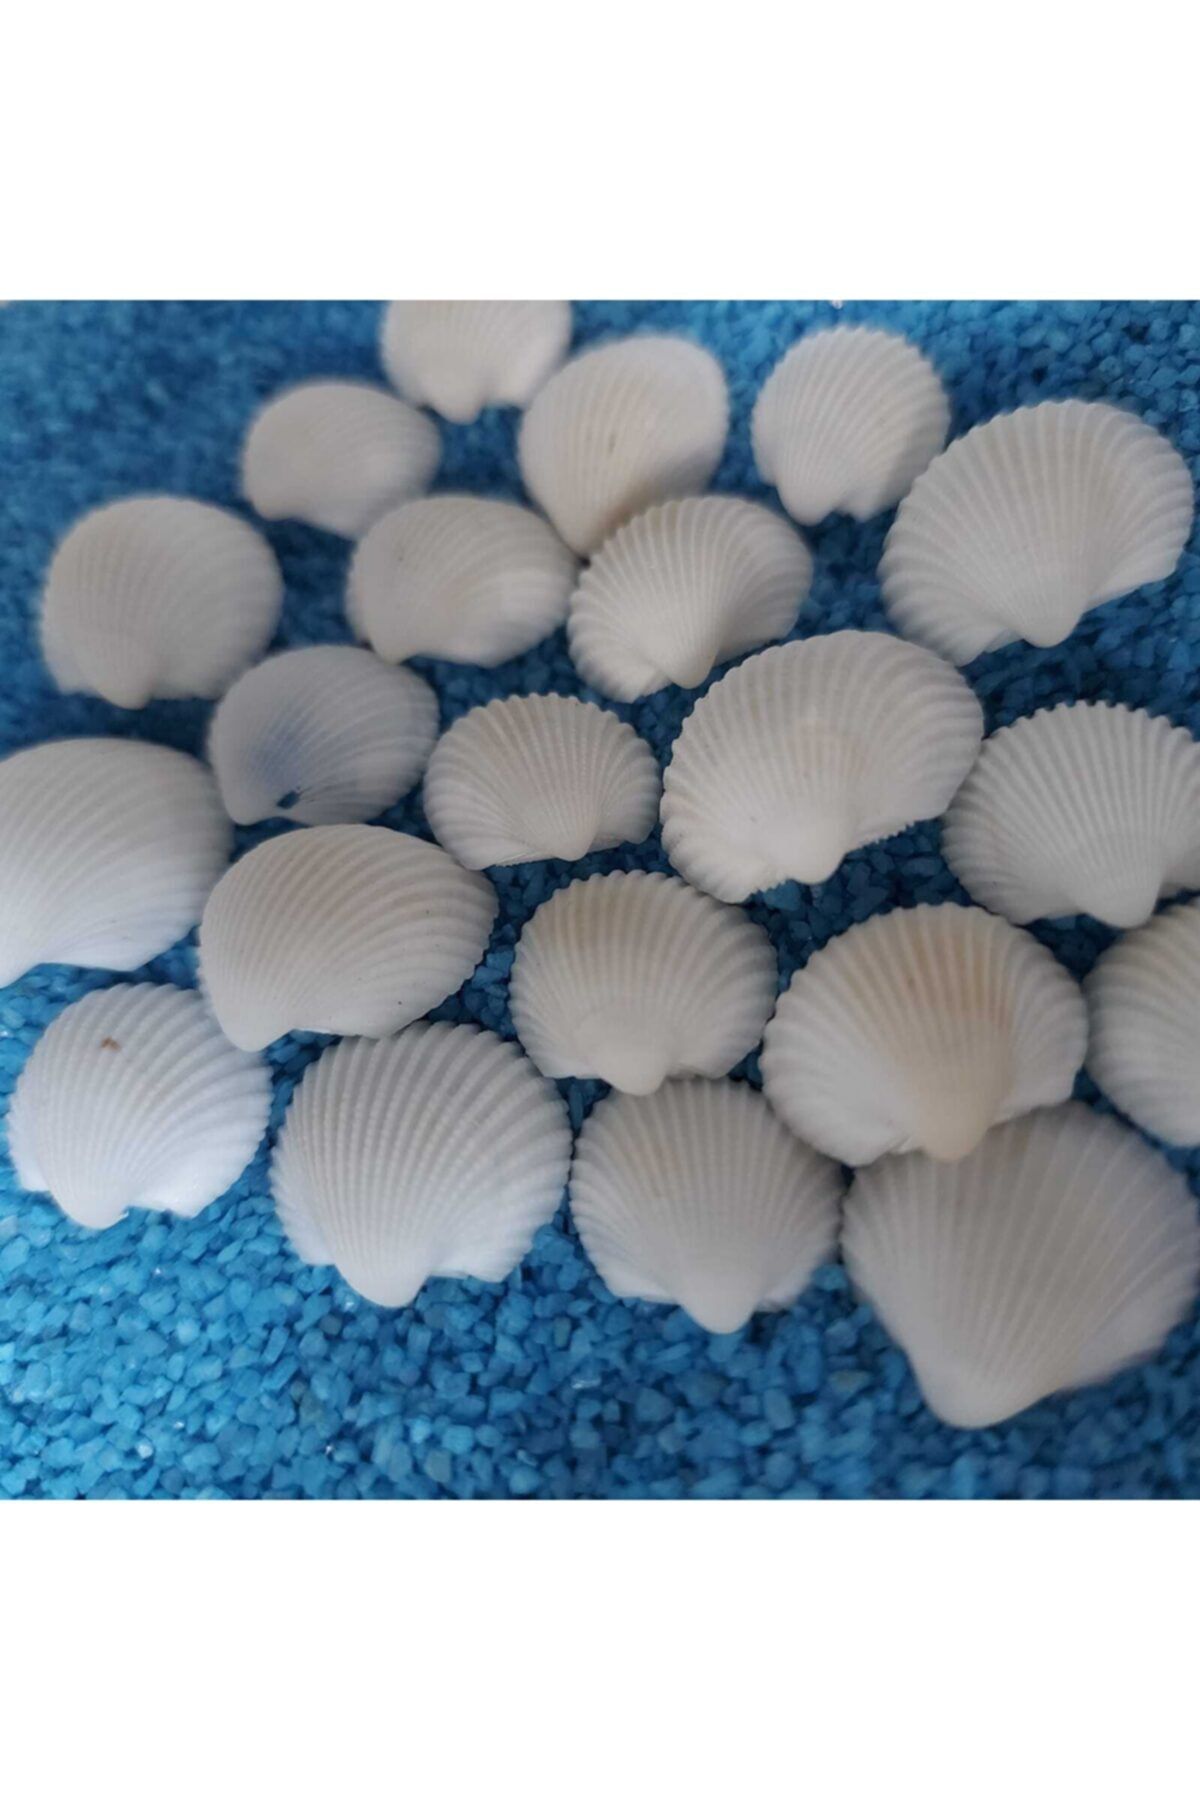 Aker Hediyelik Deniz Kabukları Silis Akvaryum Süs Ufak Kabuk Modeli 1,5-2,5cm Küçük Deniz Kabuğu 150gr Teraryum